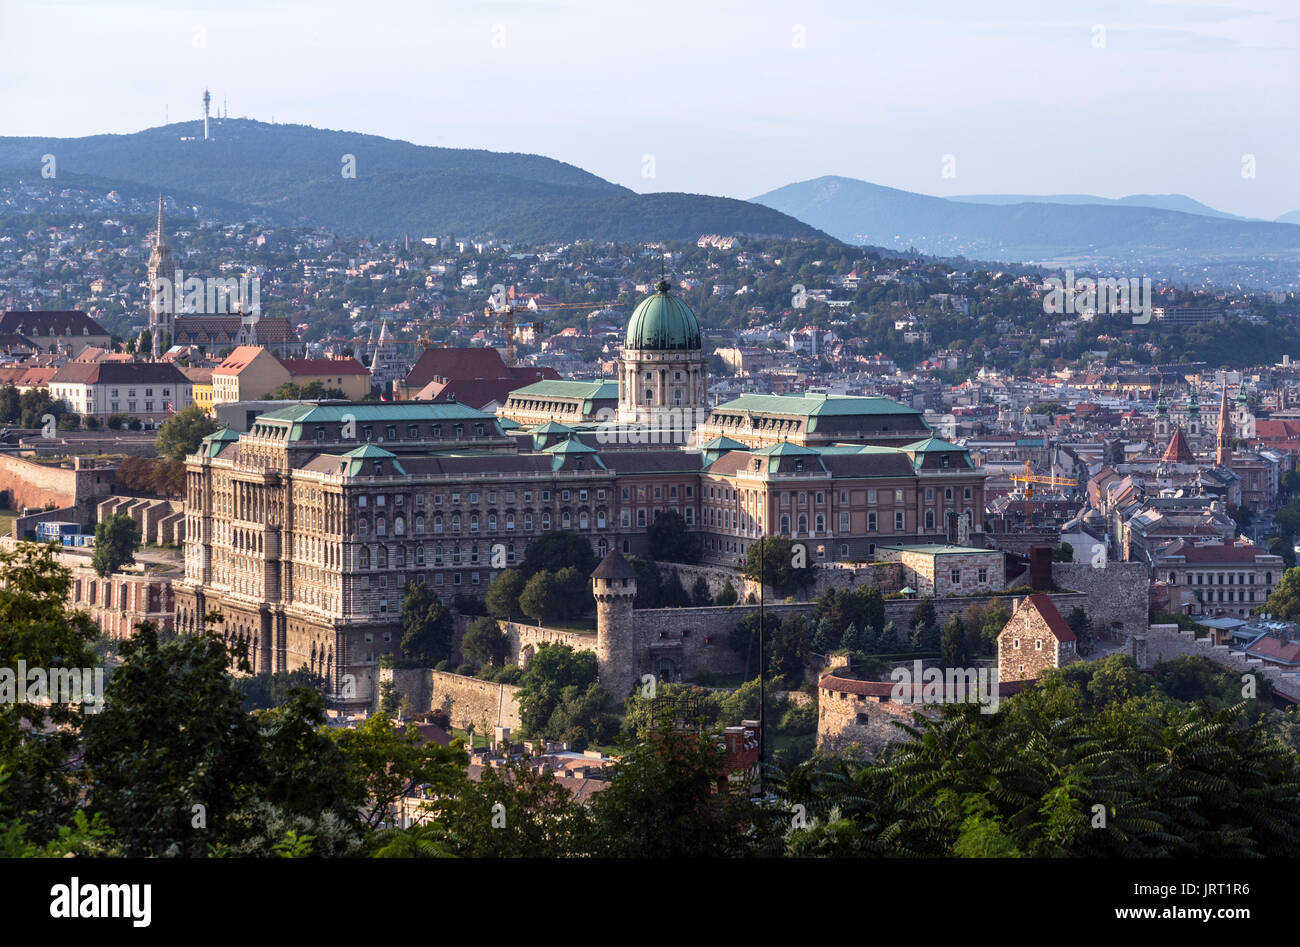 Burg von Buda. Blick vom Gellertberg, der Budaer Burg (Königlicher Palast) und Castle Hill, Budapest, Ungarn Stockfoto